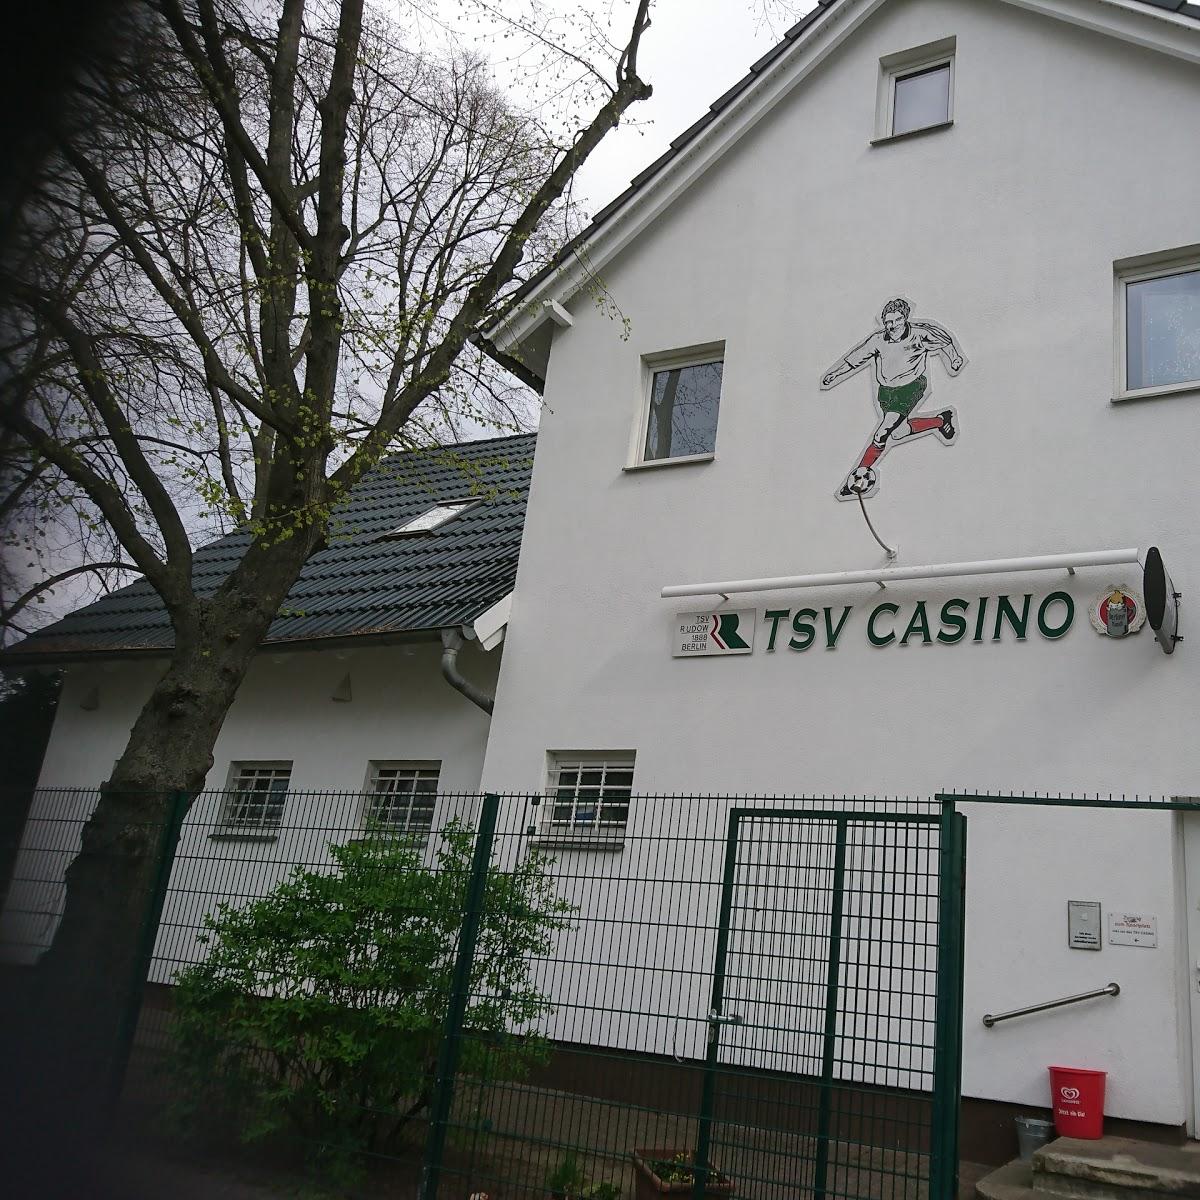 Restaurant "TSV Casino am Stubenrauchplatz" in Berlin